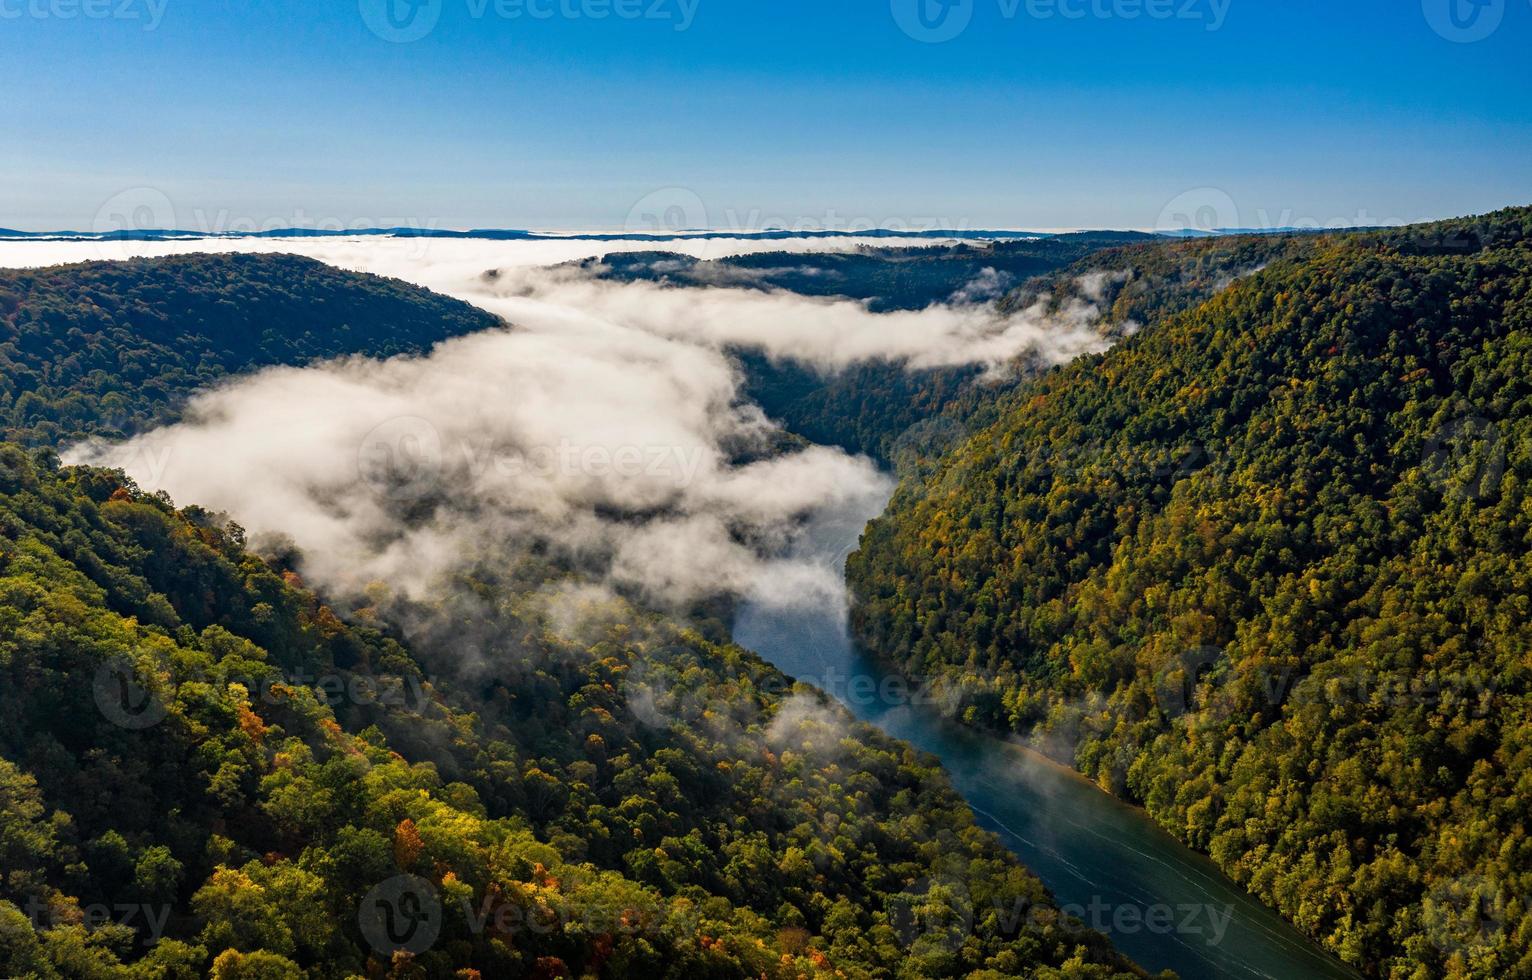 stretta gola del fiume cheat a monte del parco statale di Coopers Rock nella Virginia occidentale con i colori dell'autunno foto